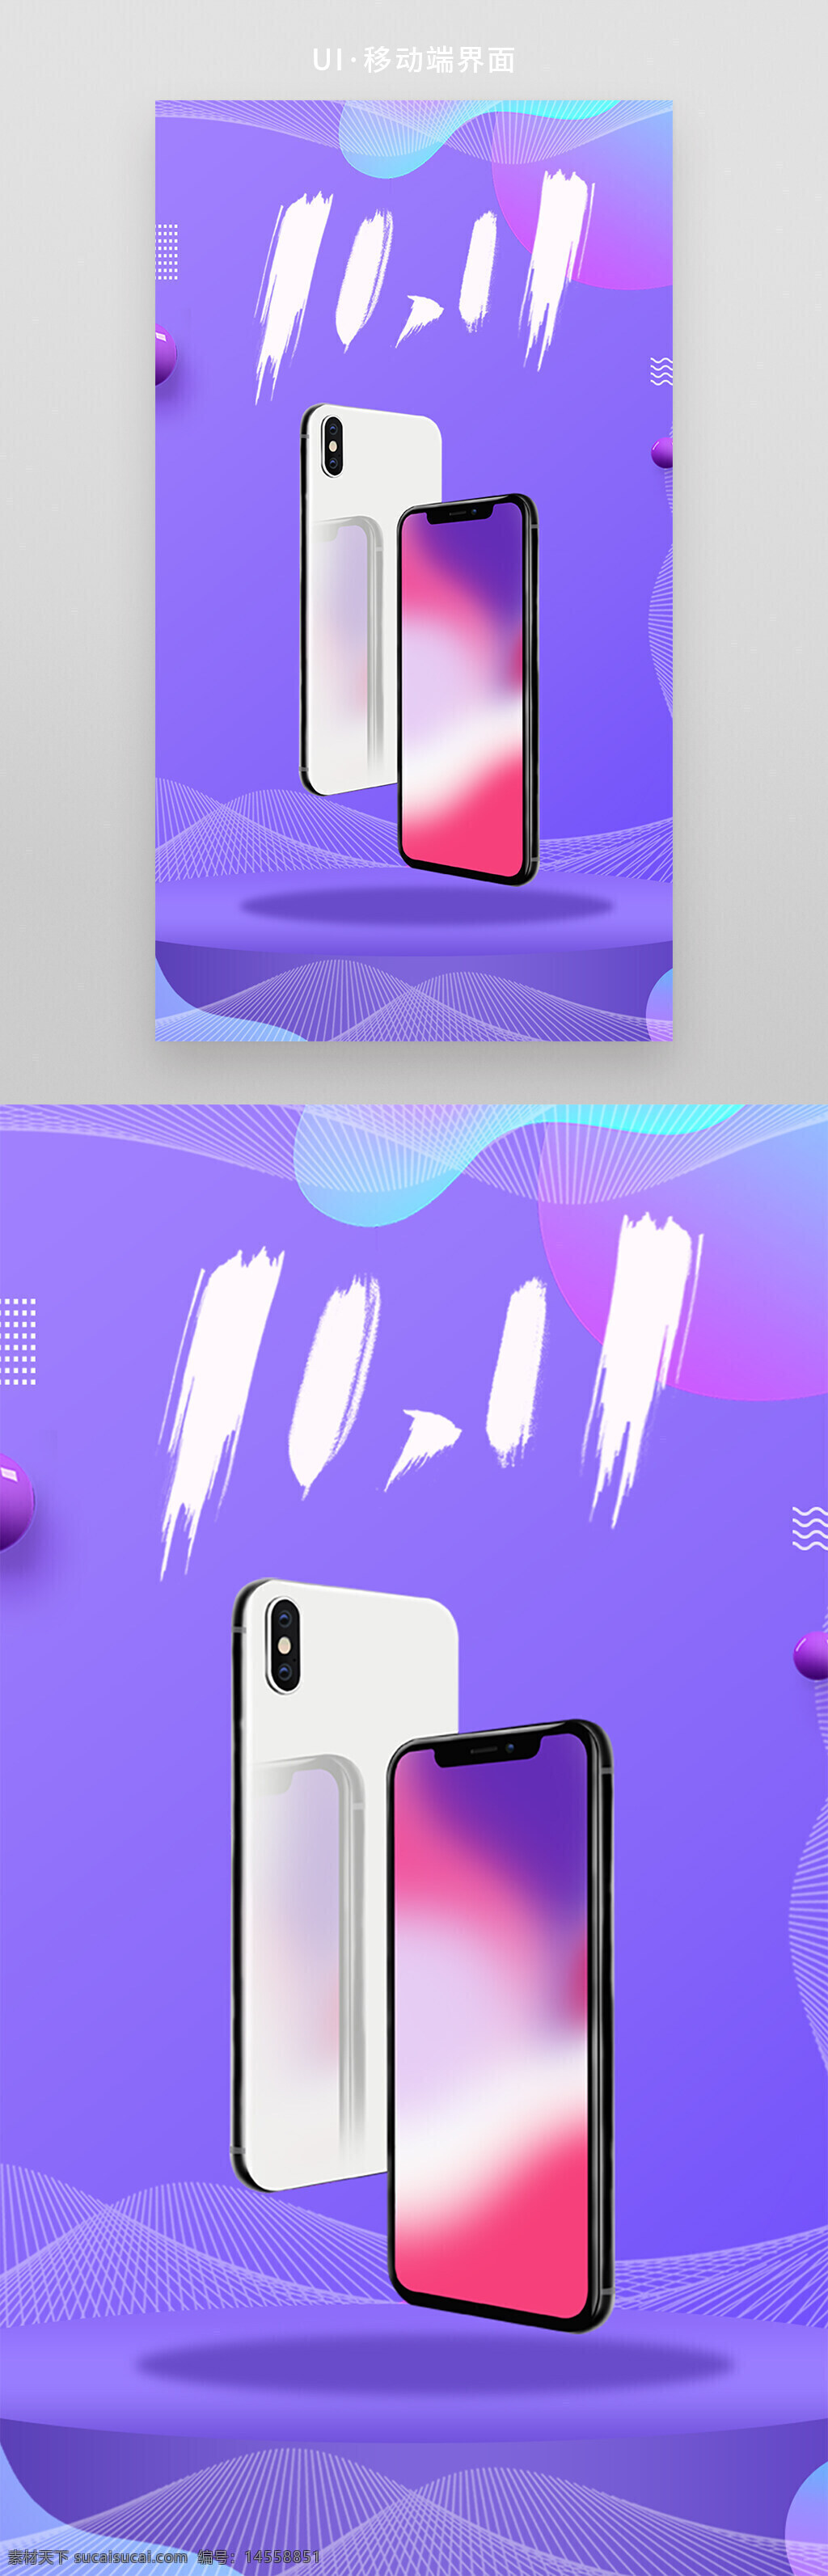 电商设计 数码产品 海报模板 手机 双十一 双11 618 购物节 店庆模版 新品上市 预售 紫色 科技 炫酷